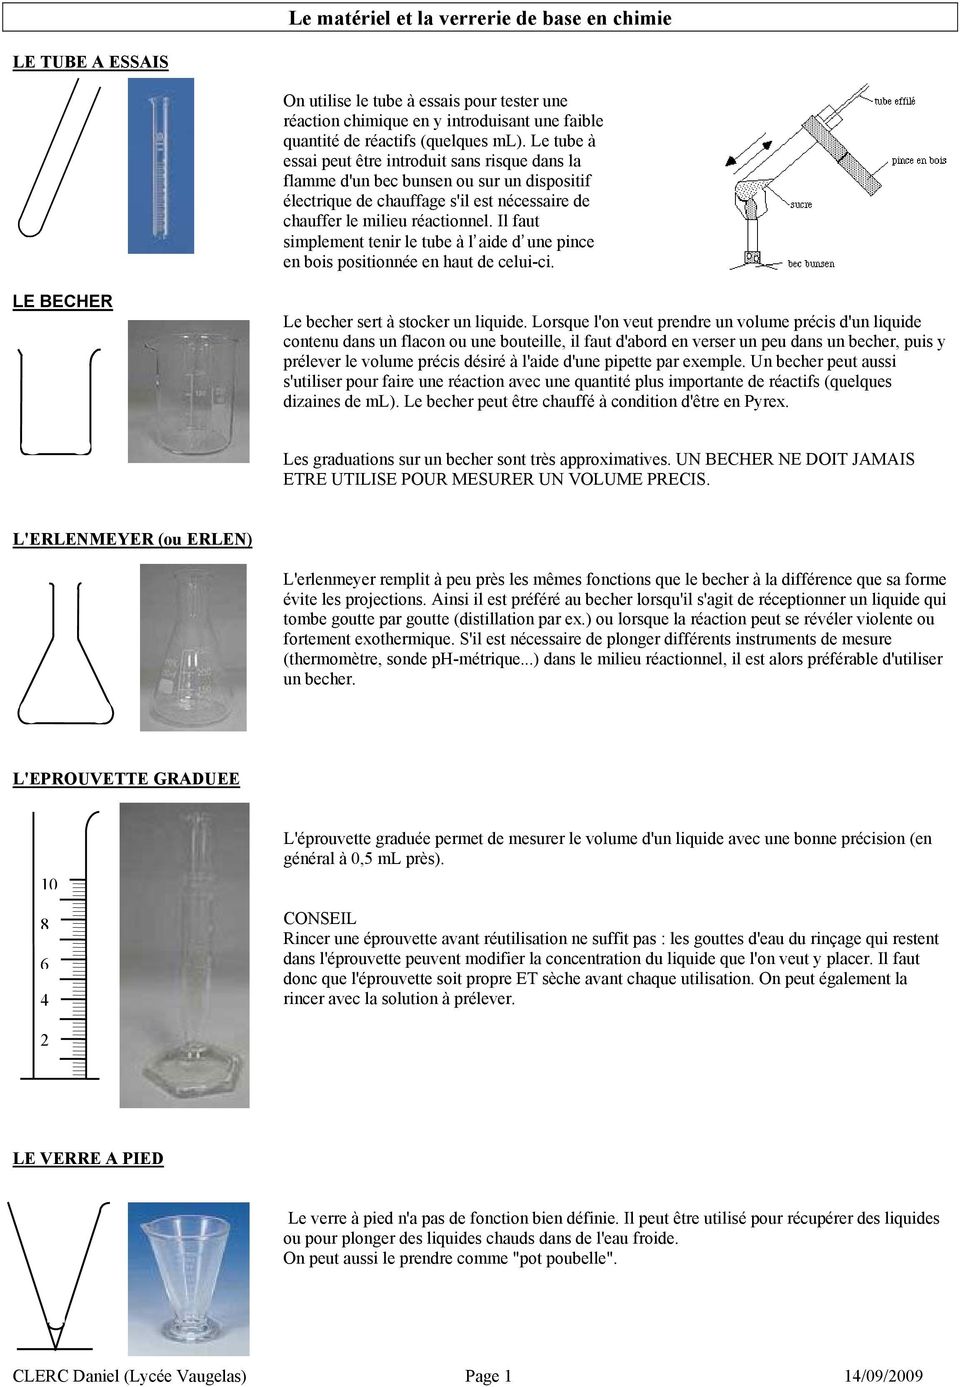 Le matériel et la verrerie de base en chimie - PDF Free Download